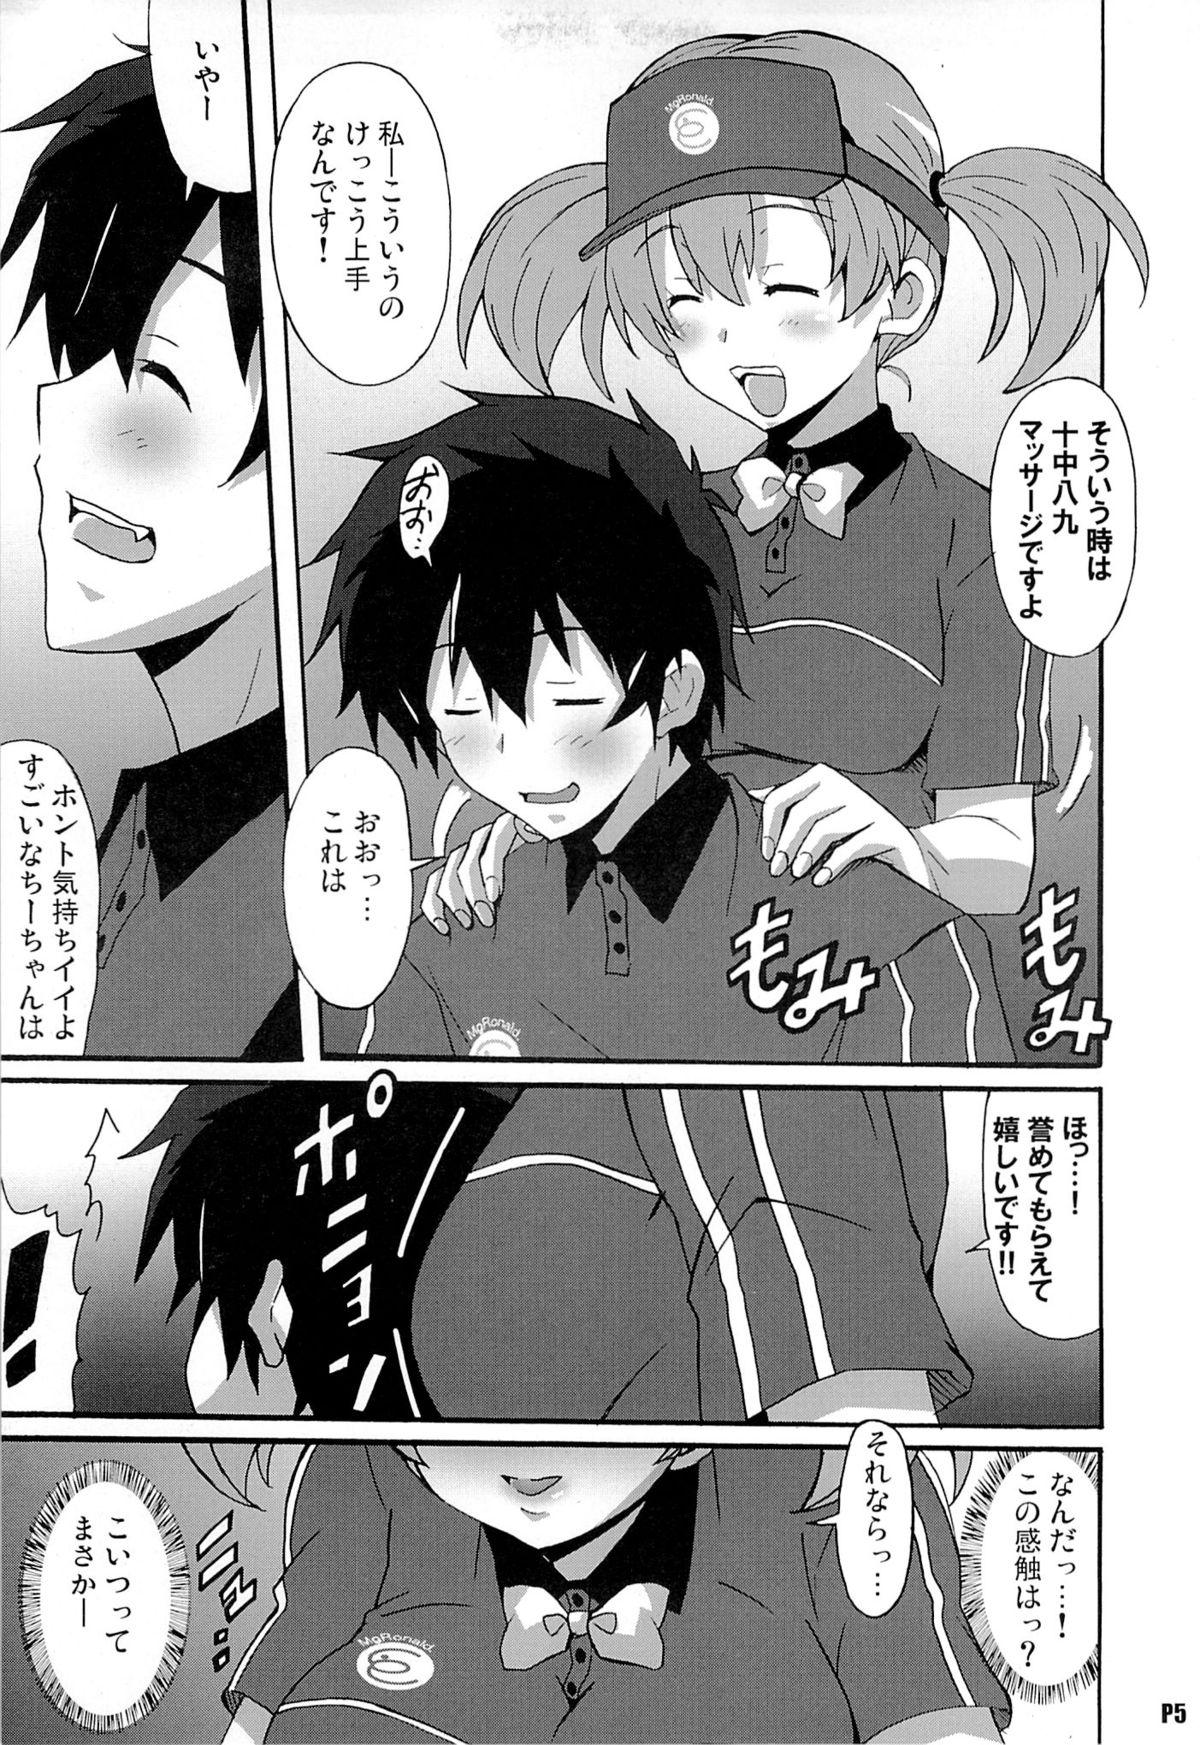 Beard Hagende Chiho-san! - Hataraku maou-sama Teenies - Page 4